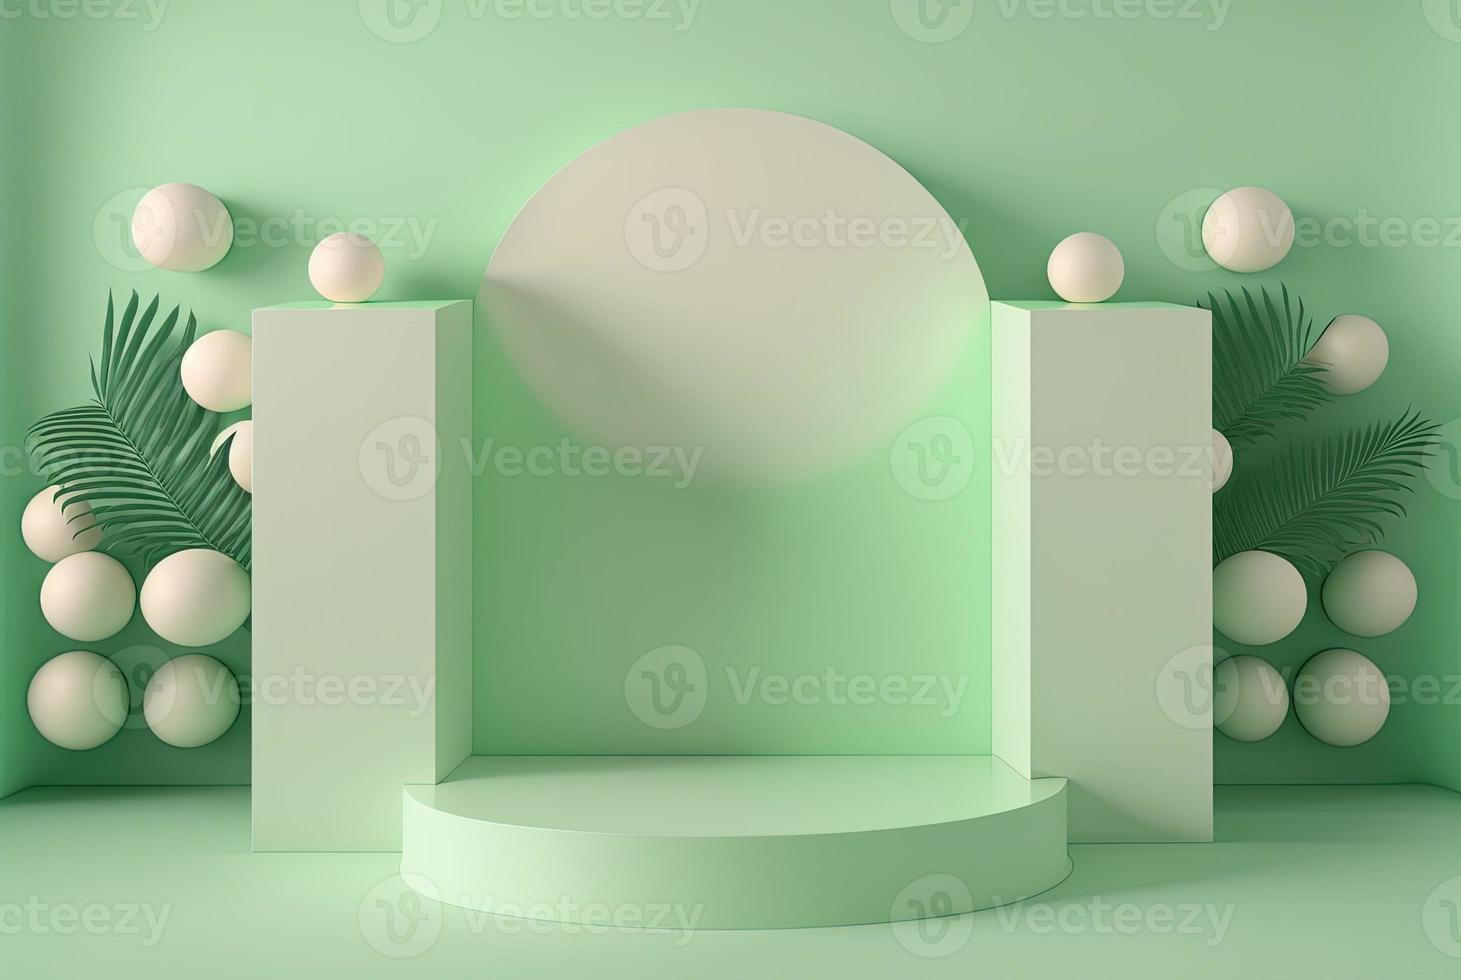 ilustración realista en 3d de un podio verde suave con hojas alrededor para mostrar el producto foto